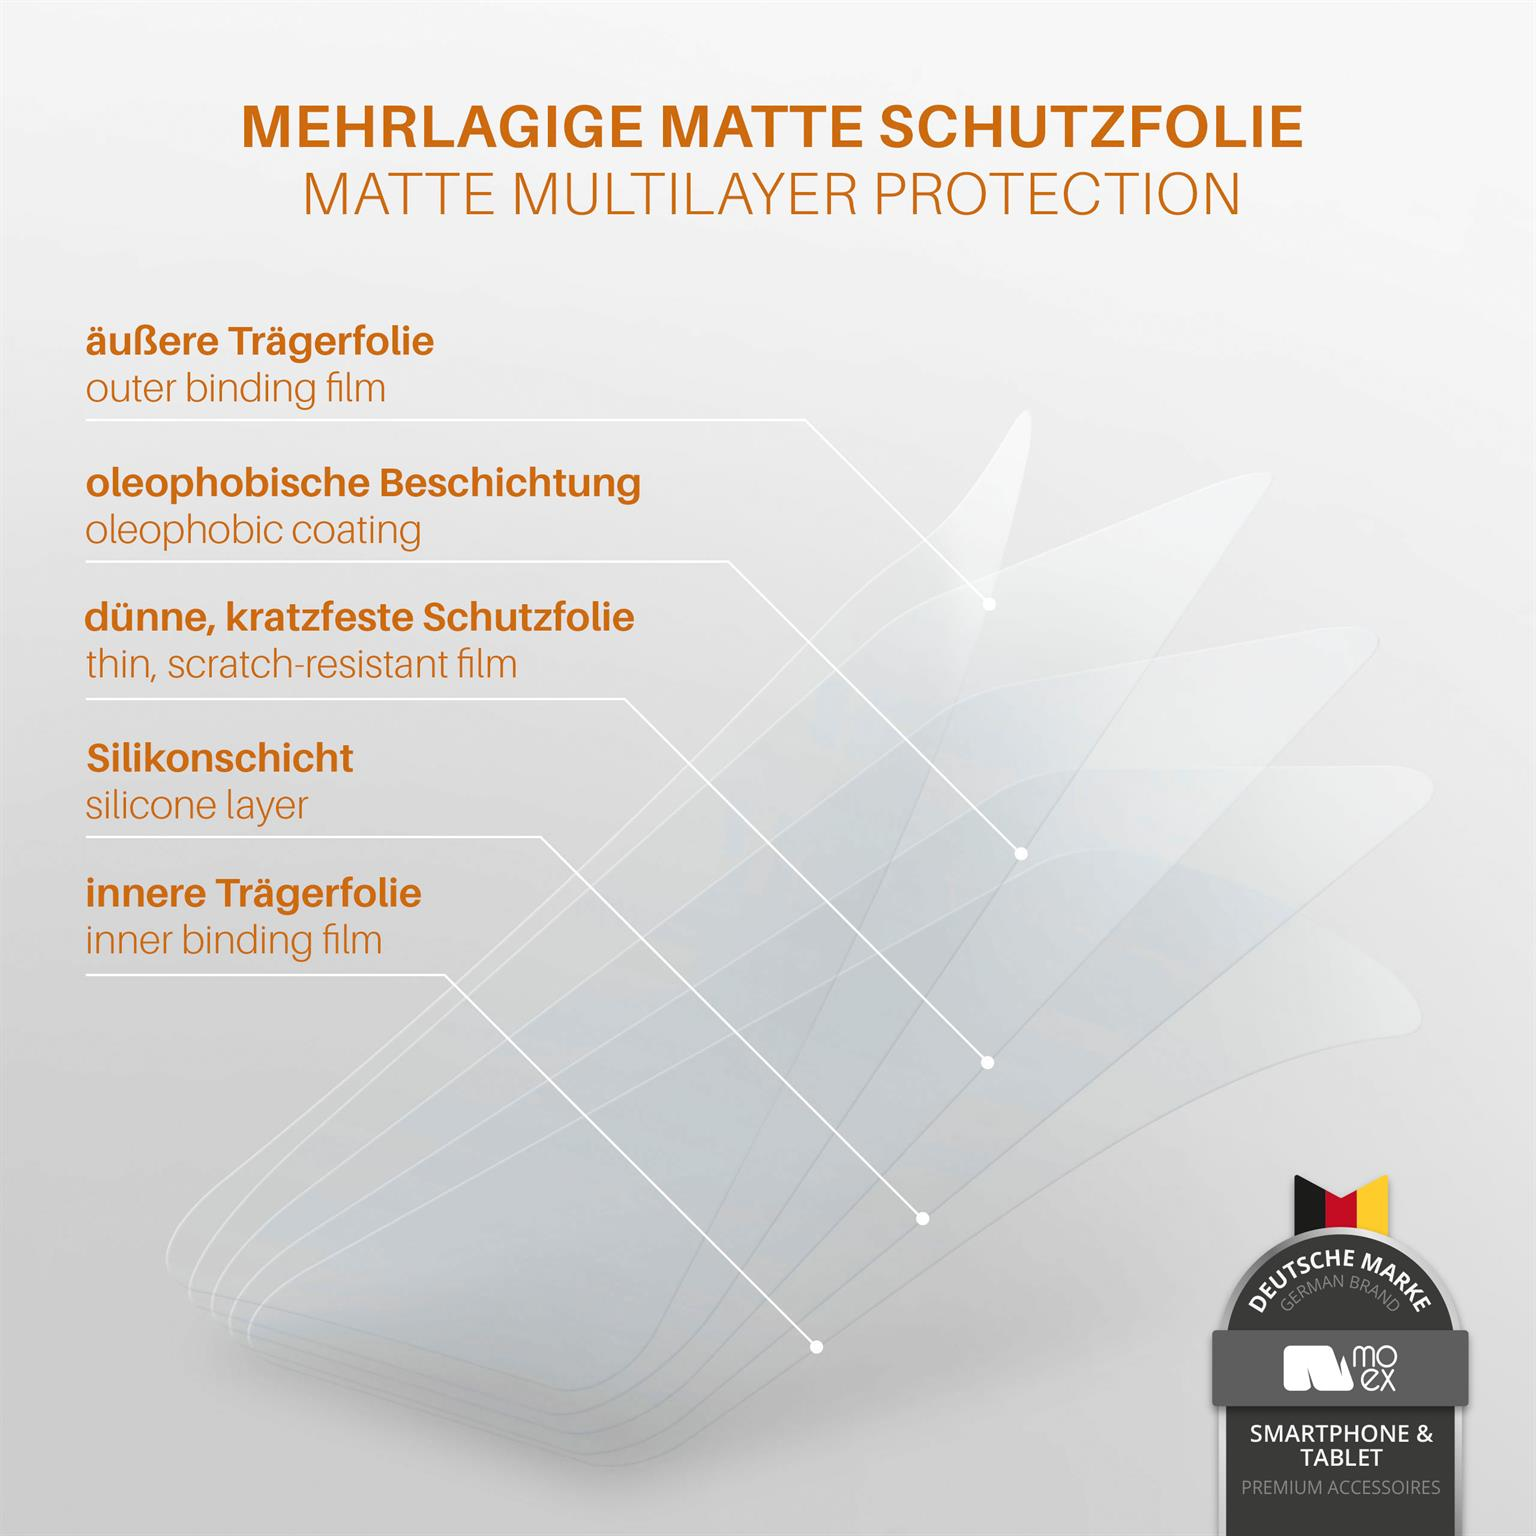 Schutzfolie, K4 3x (2016)) matt Displayschutz(für LG MOEX